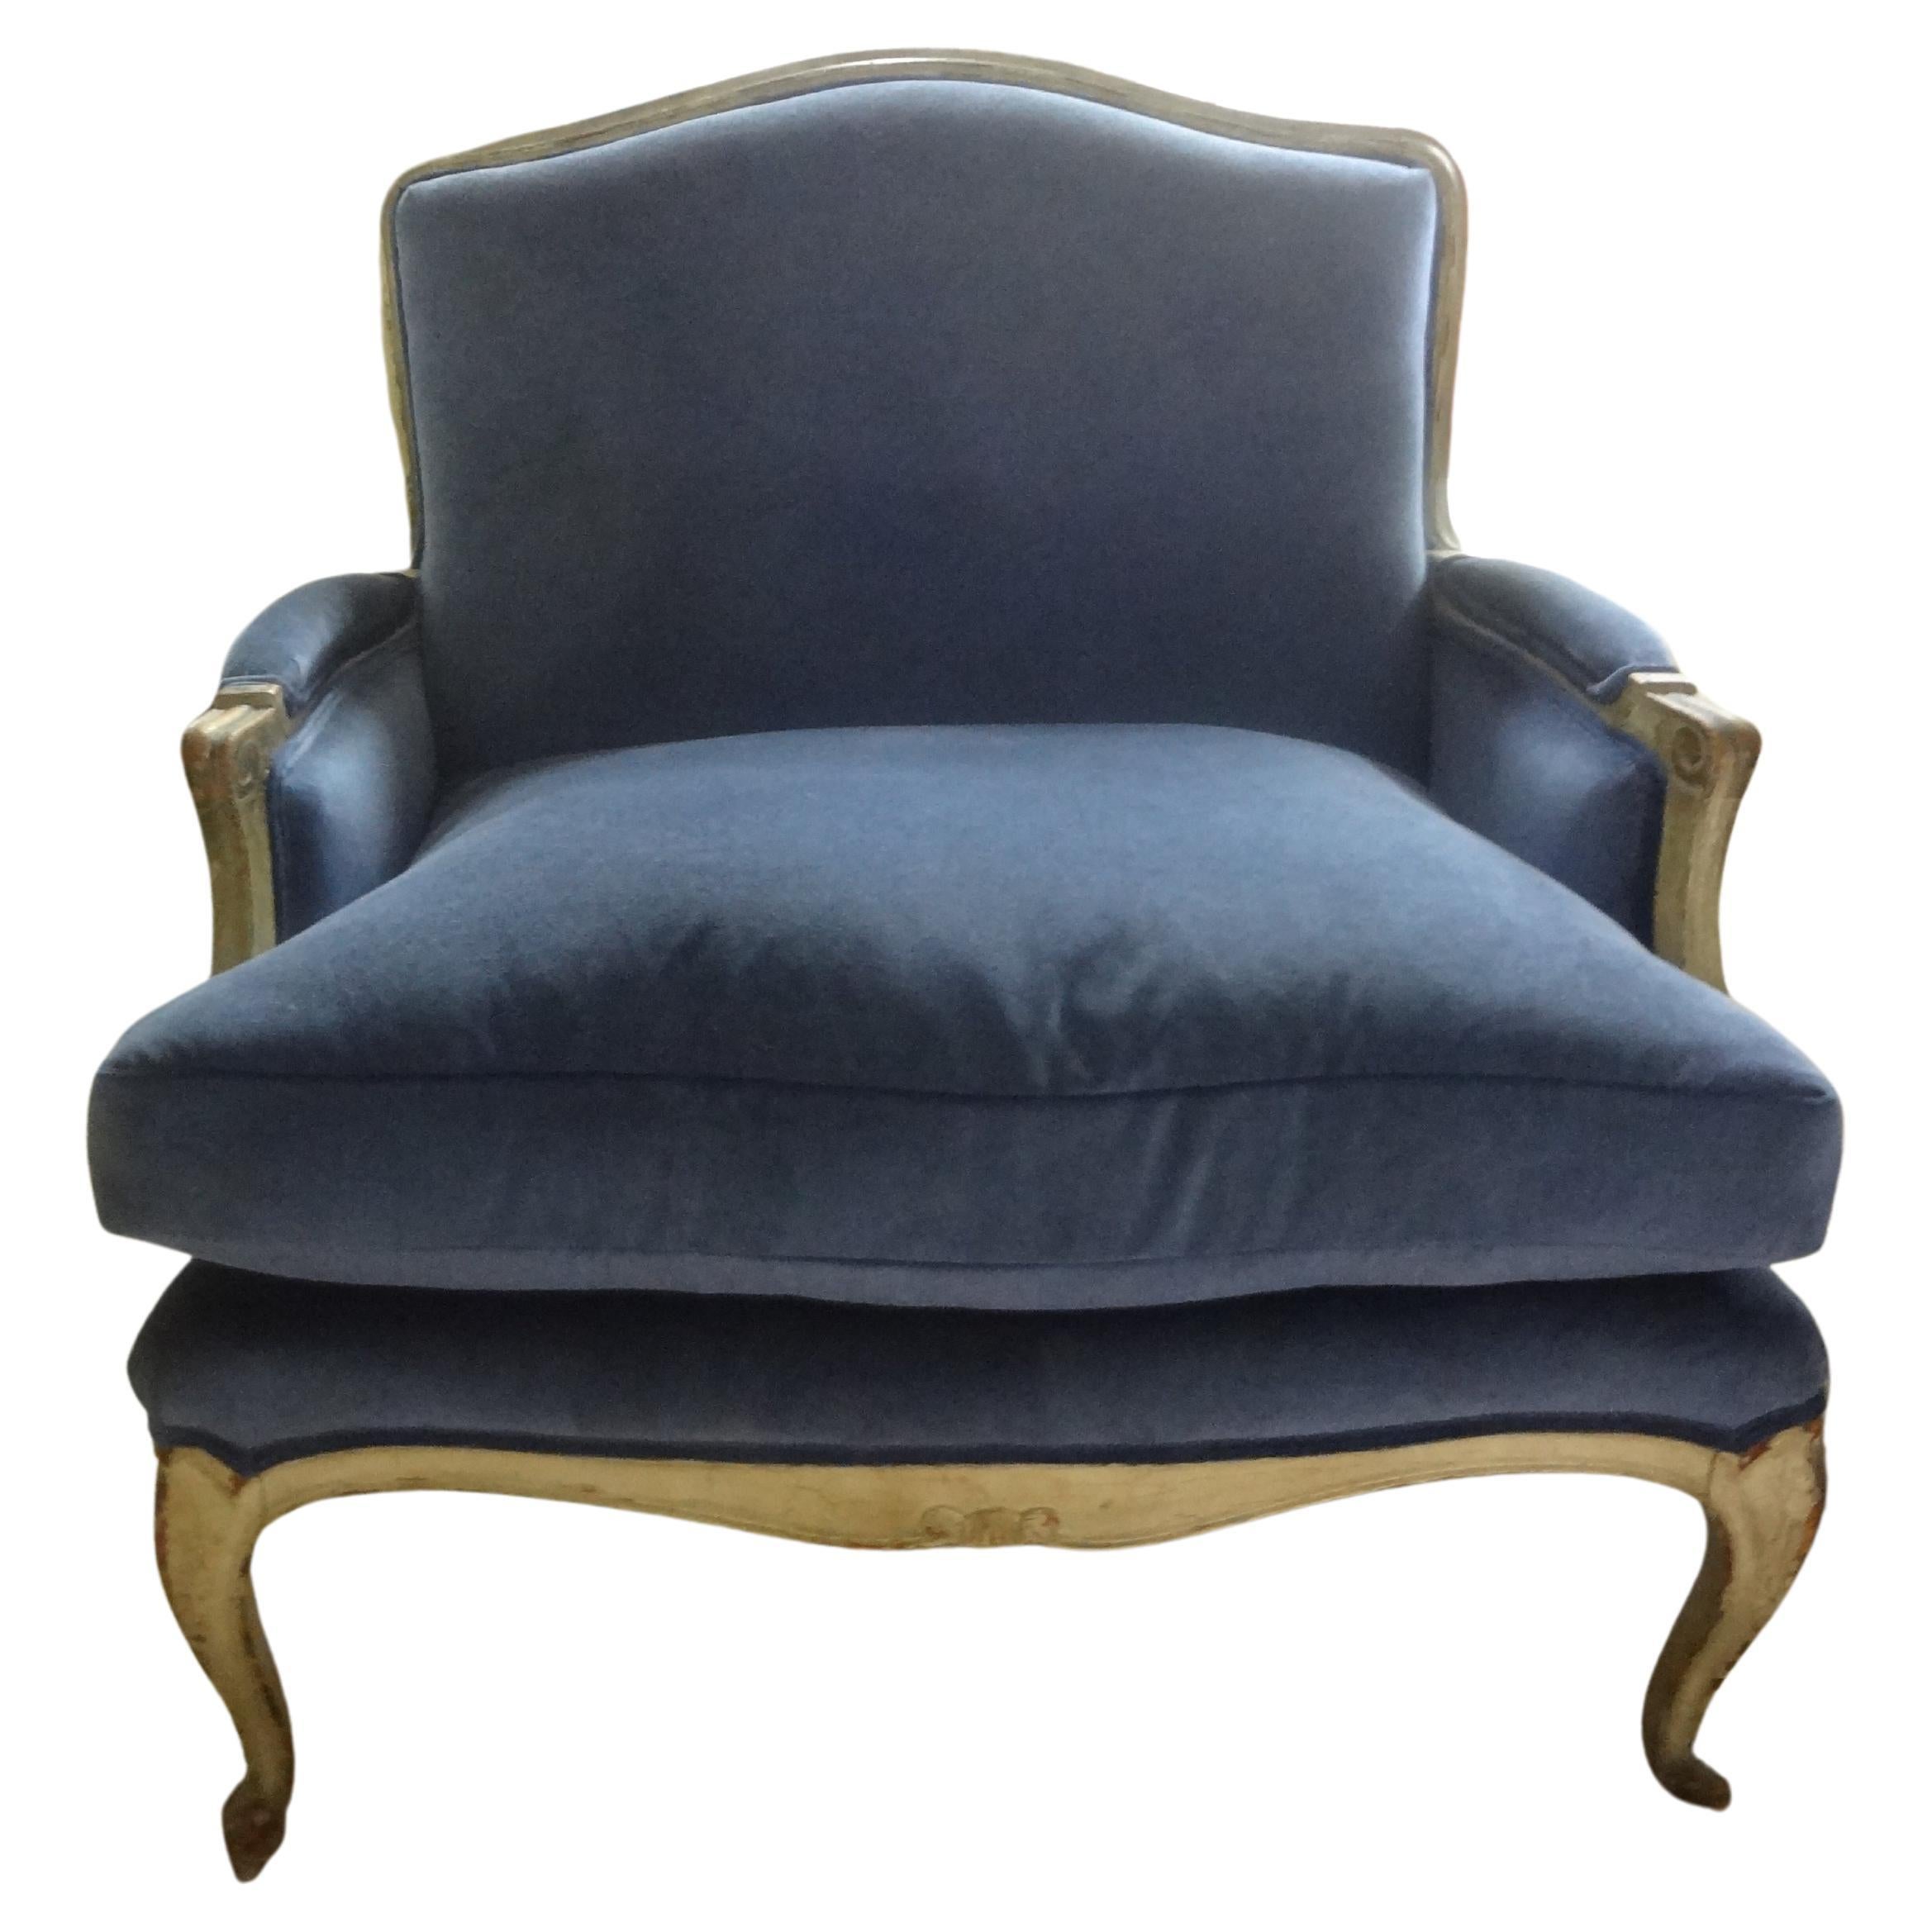 Paar italienische Marquise im Stil Louis XV-XVI aus dem 19. Jahrhundert. Marquises sind übergroße Liegestühle, Loveseats oder große Stühle. Dieses atemberaubende Paar passender italienischer Marquisen oder Bergère-Stühle im Louis XVI-Stil wurde